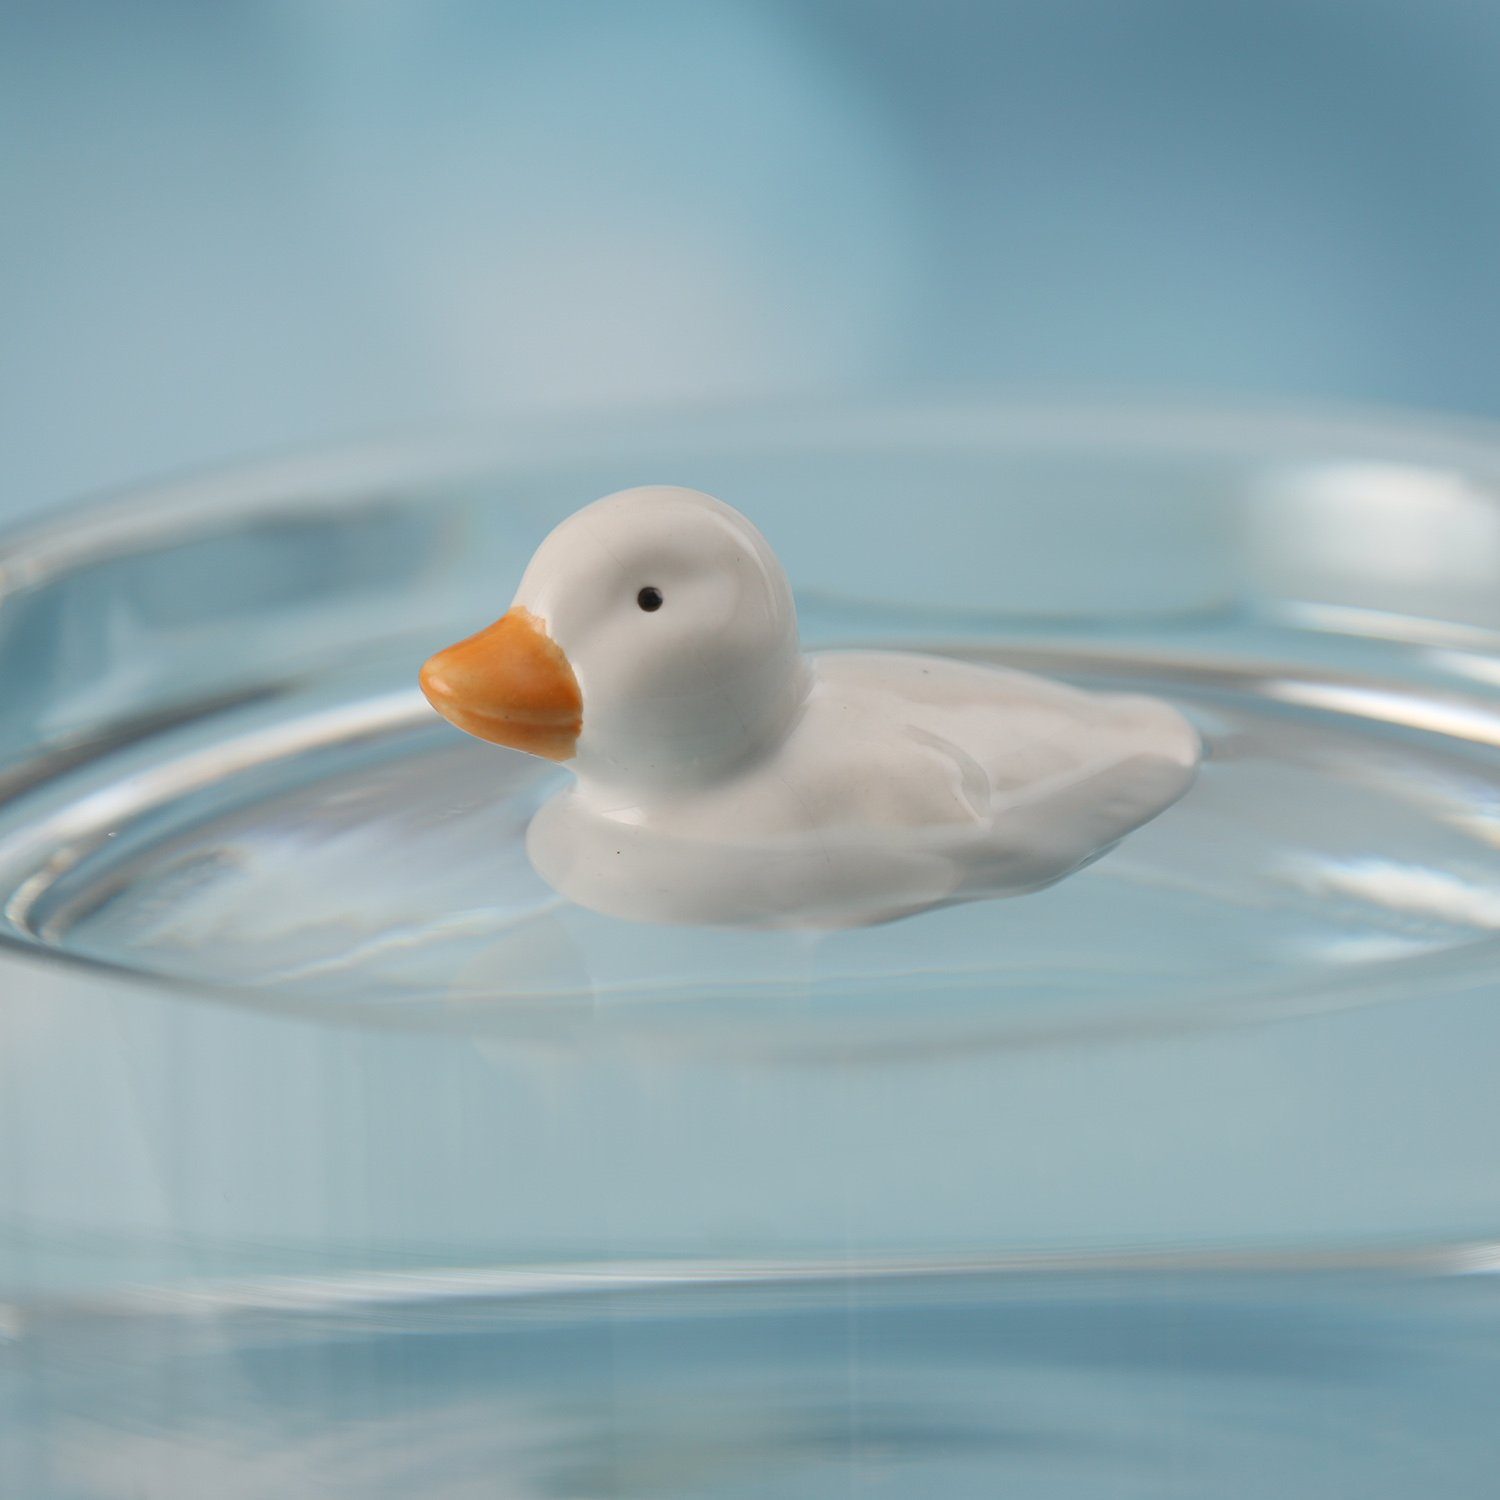 MARELIDA Tierfigur Teichdeko Ente Dekofigur schwimmend Porzellan weiß Dekoente L: 7cm (1 St)